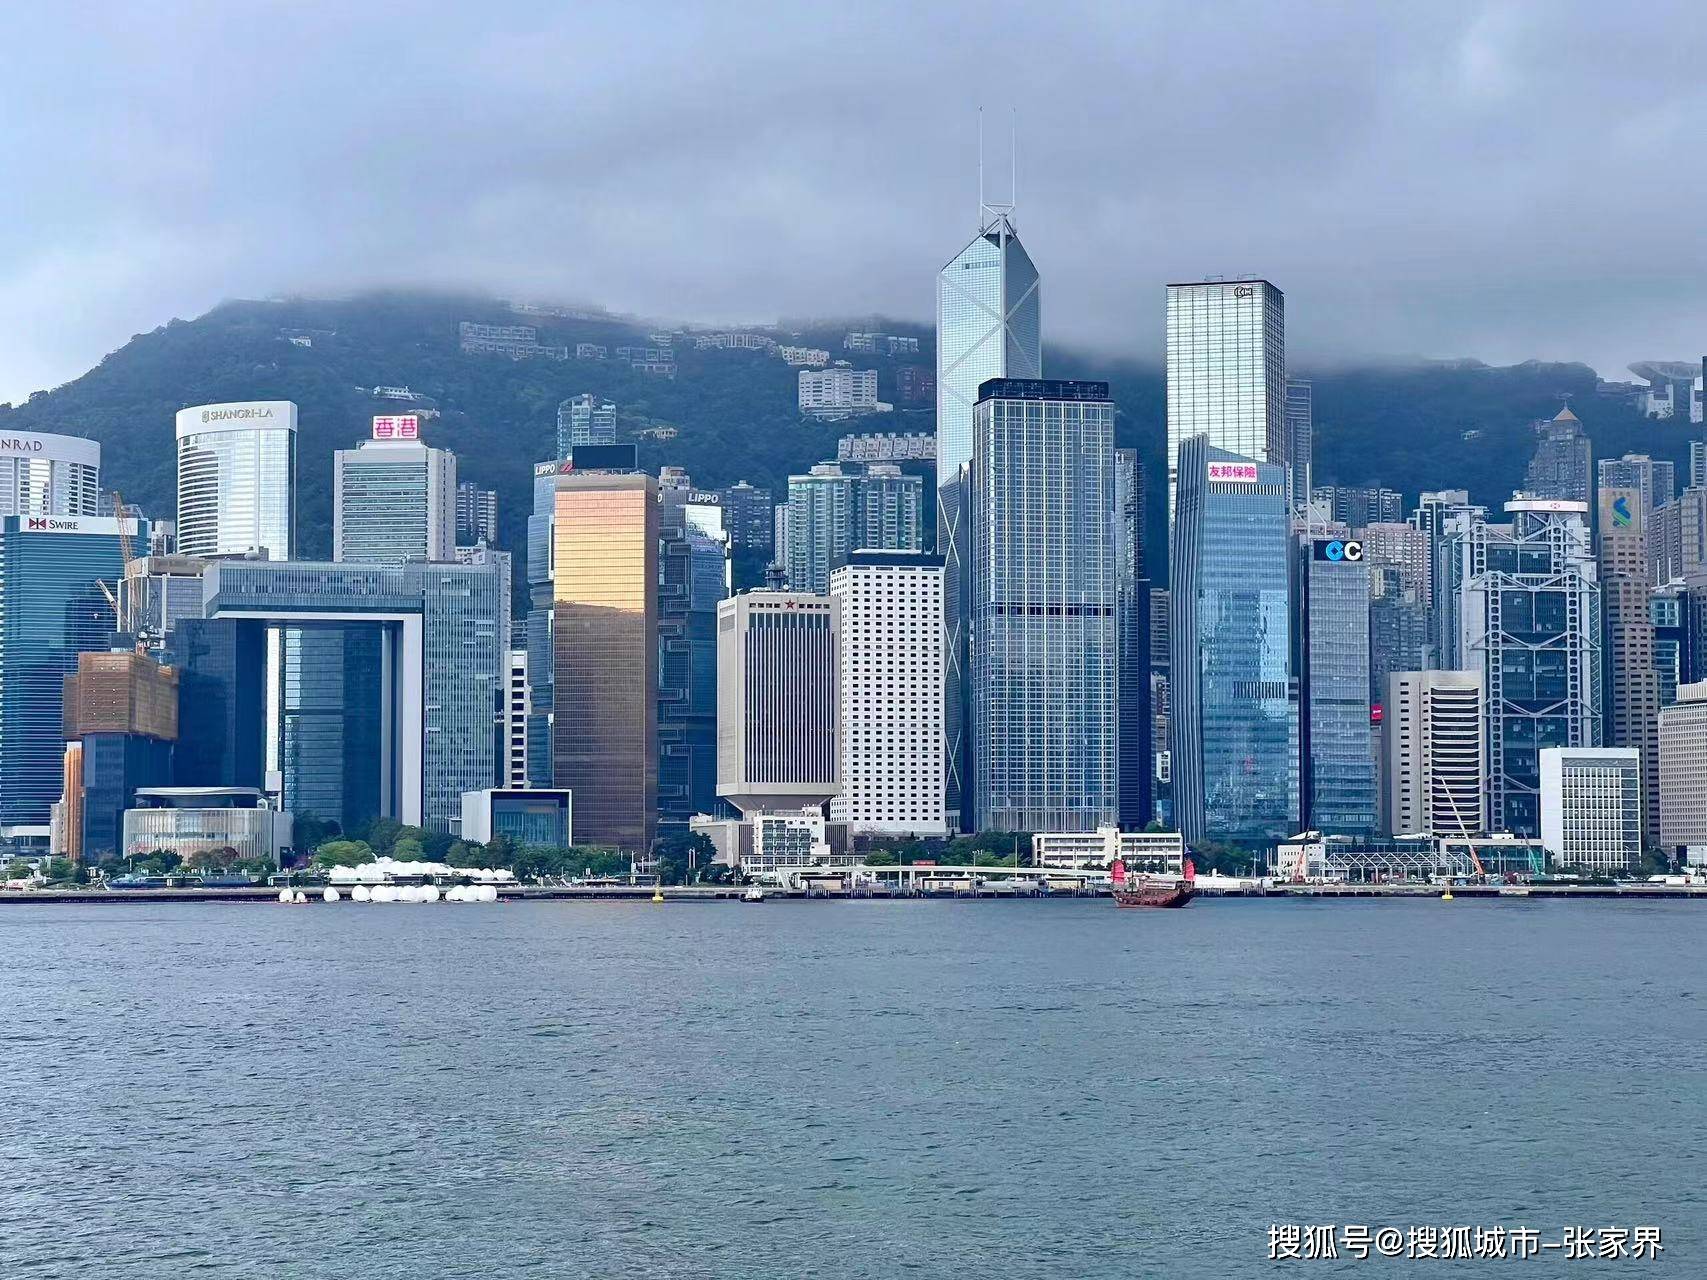 金紫荆广场不仅是香港的标志性建筑之一,更是香港人民心中的骄傲和